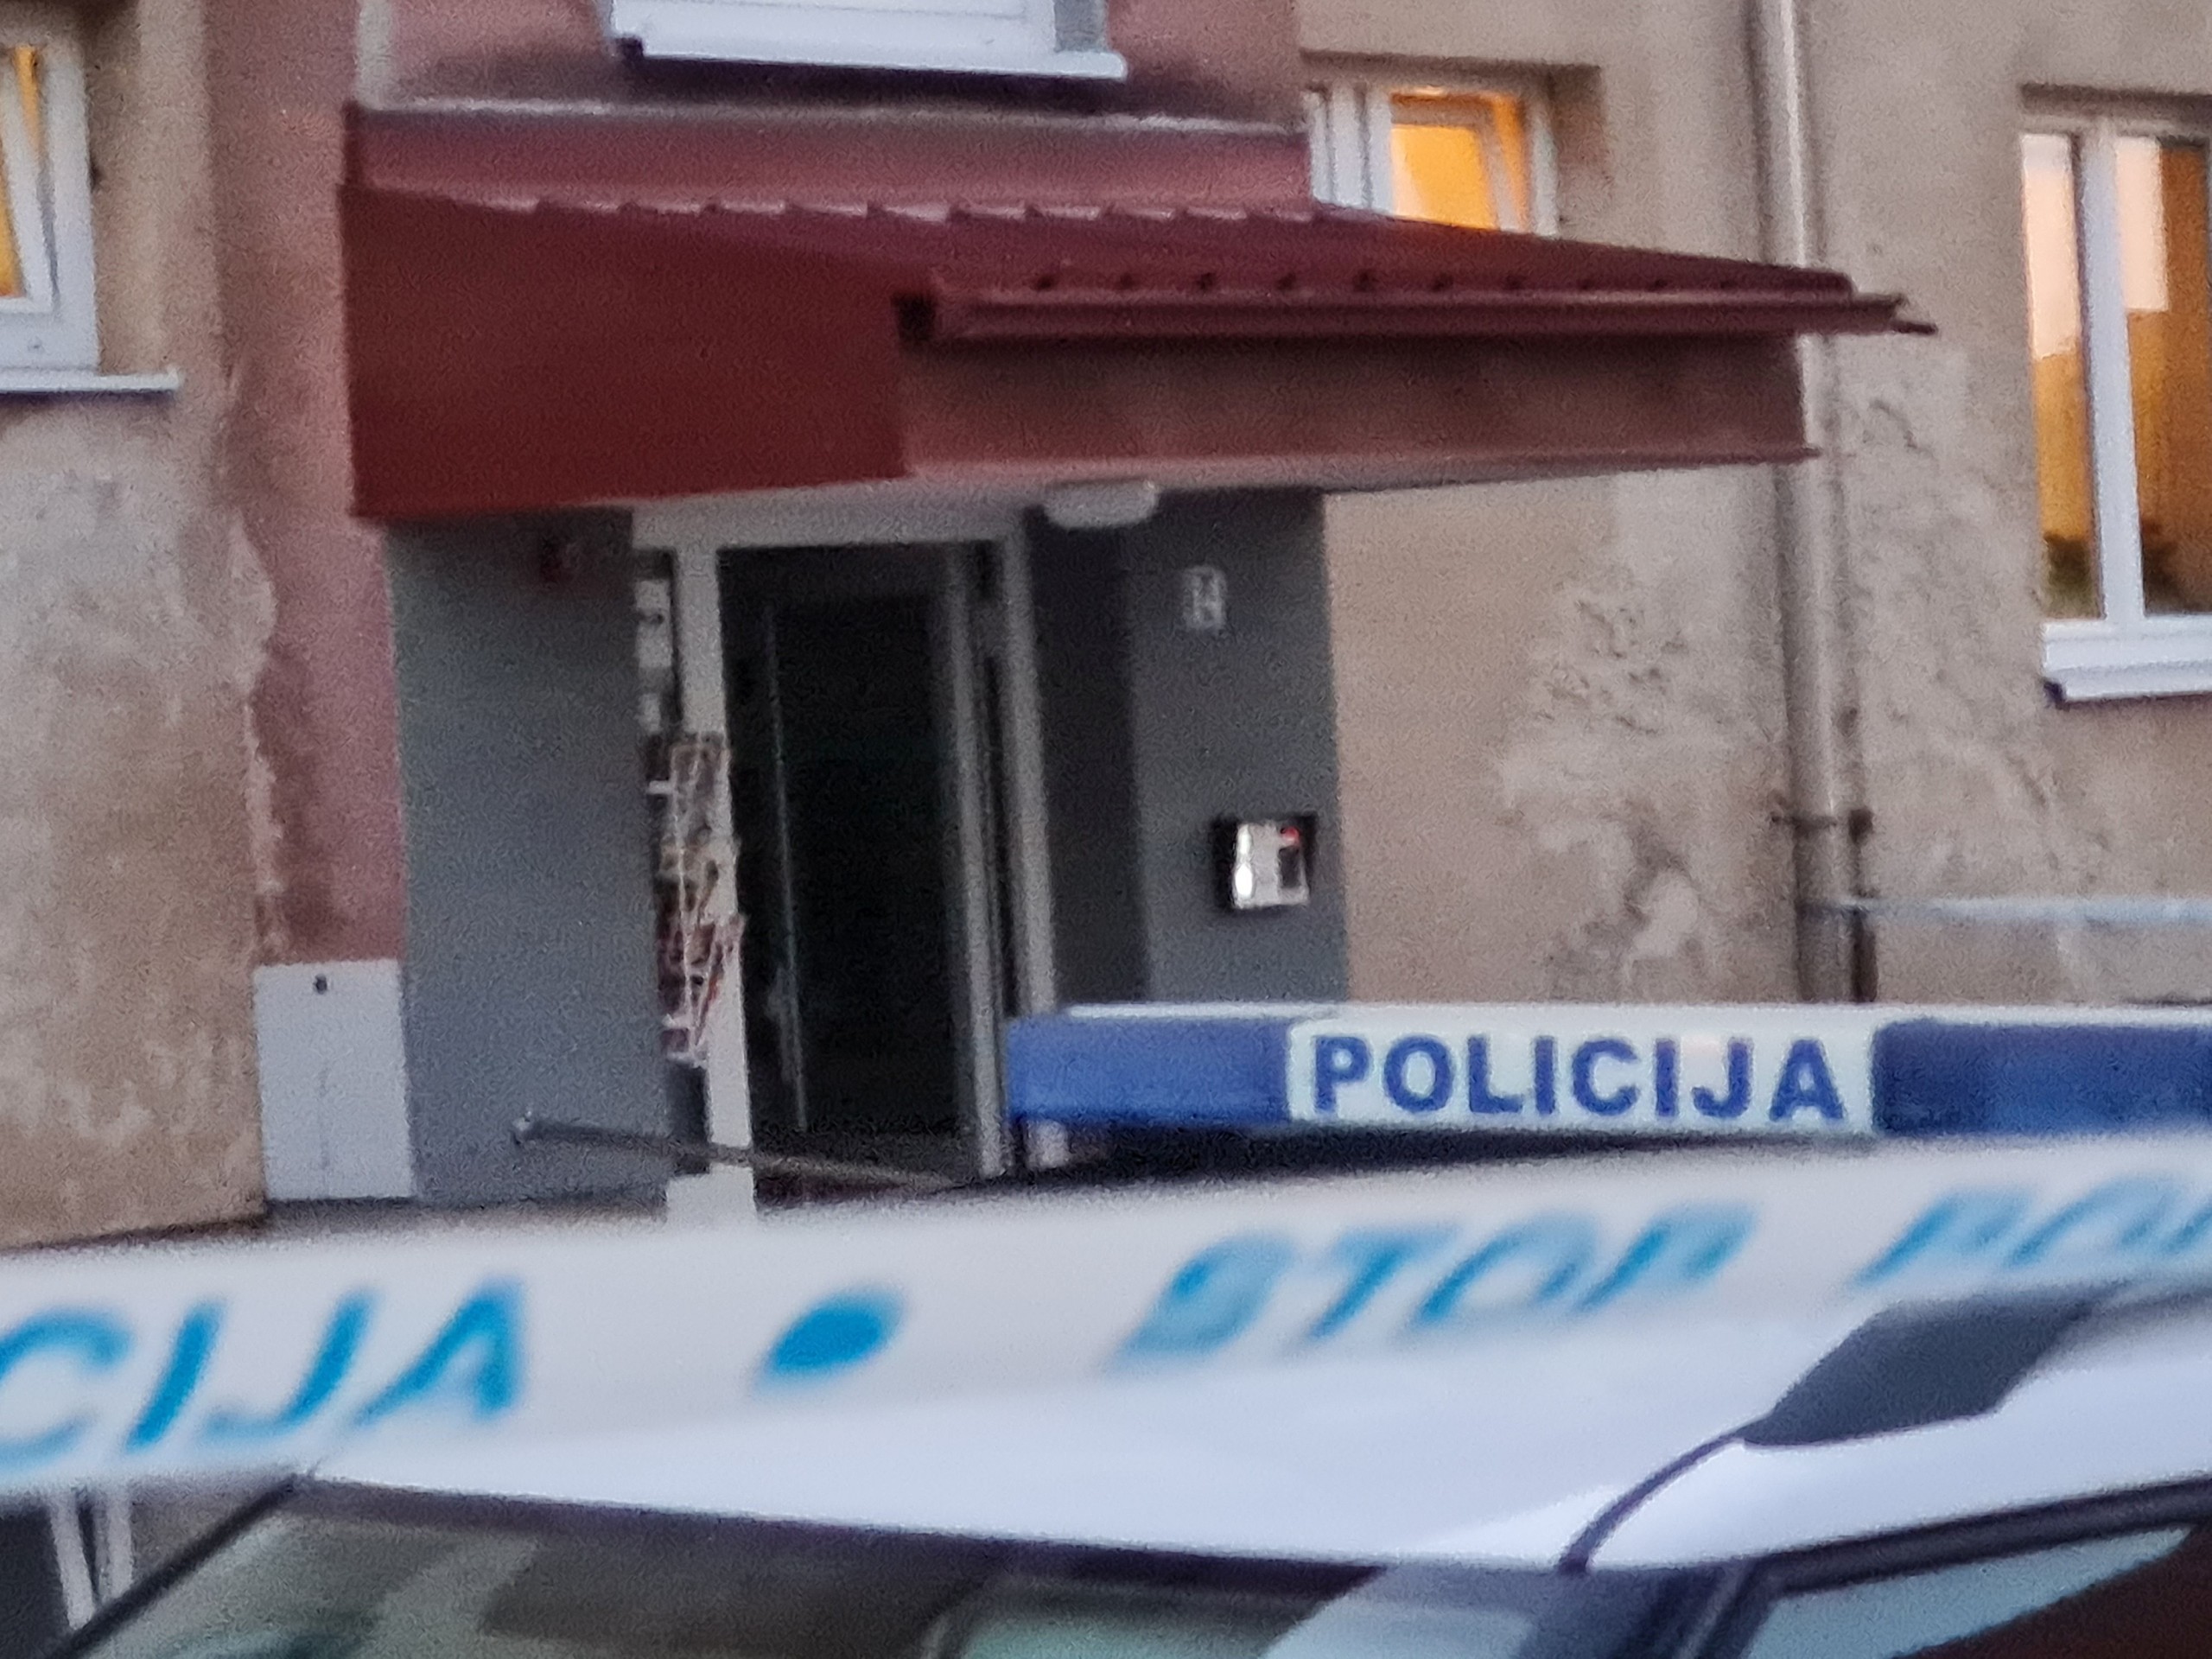 Varaždin, 17.04.2022. - U stanu u Ivancu u nedjelju popodne pronađena su mrtva tijela muškarca i žene, potvrdio je Hini policijski službenik za odnose s javnošću Policijske uprave varaždinske Matko Murić. Varaždinska PU je zaprimila dojavu oko 13,40 sati, dodao je Murić. Kako je izvijestila policija, utvrđeno je da su oboje bili policijski službenici zaposleni u PU varaždinskoj. foto HINA/ Siniša KALAJDŽIJA/ ml